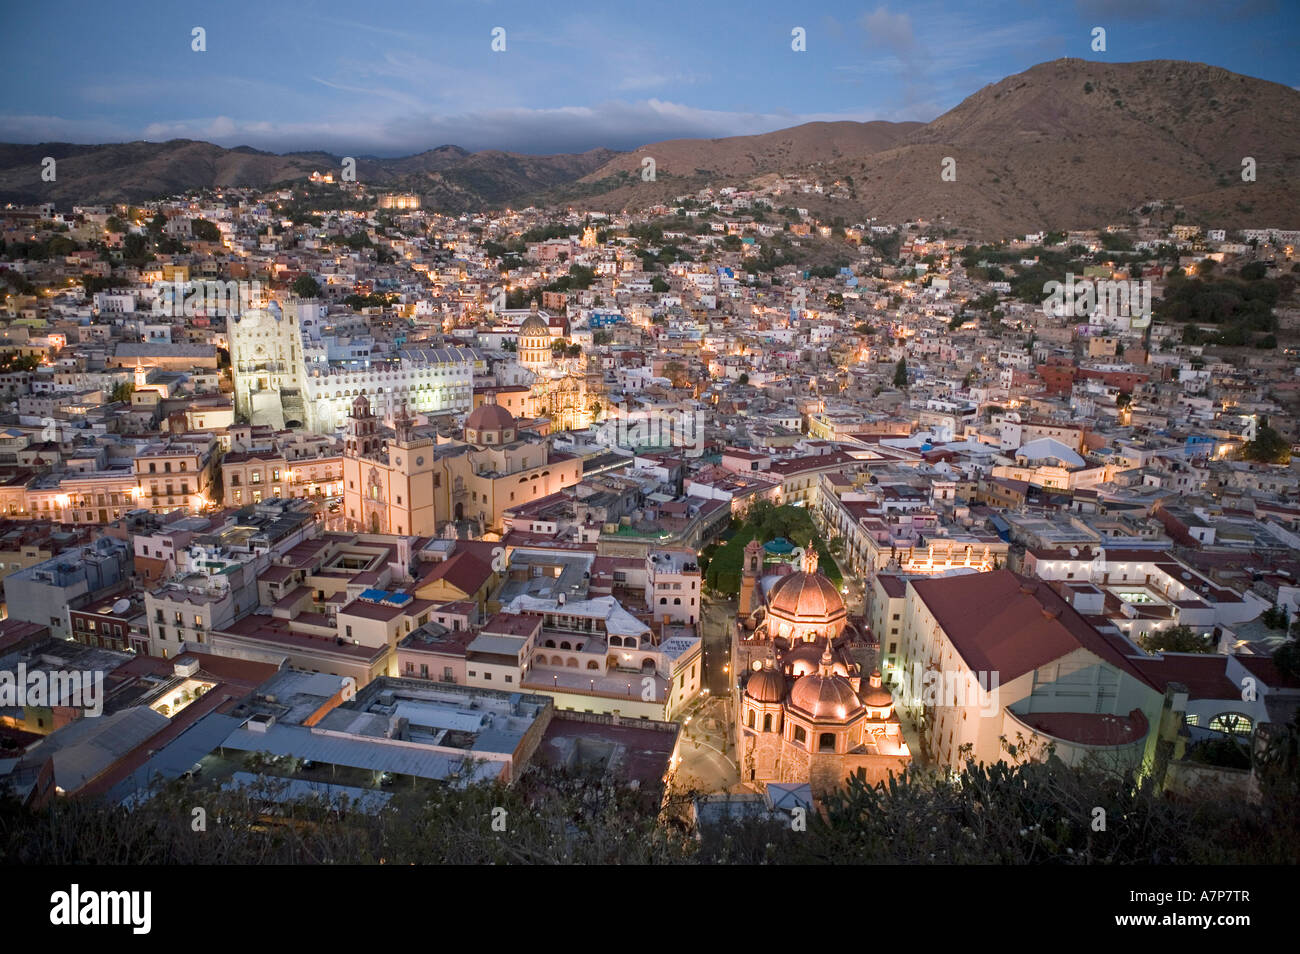 View of Guanajuato from El Pipila Monument, Guanajuato, Mexico Stock Photo